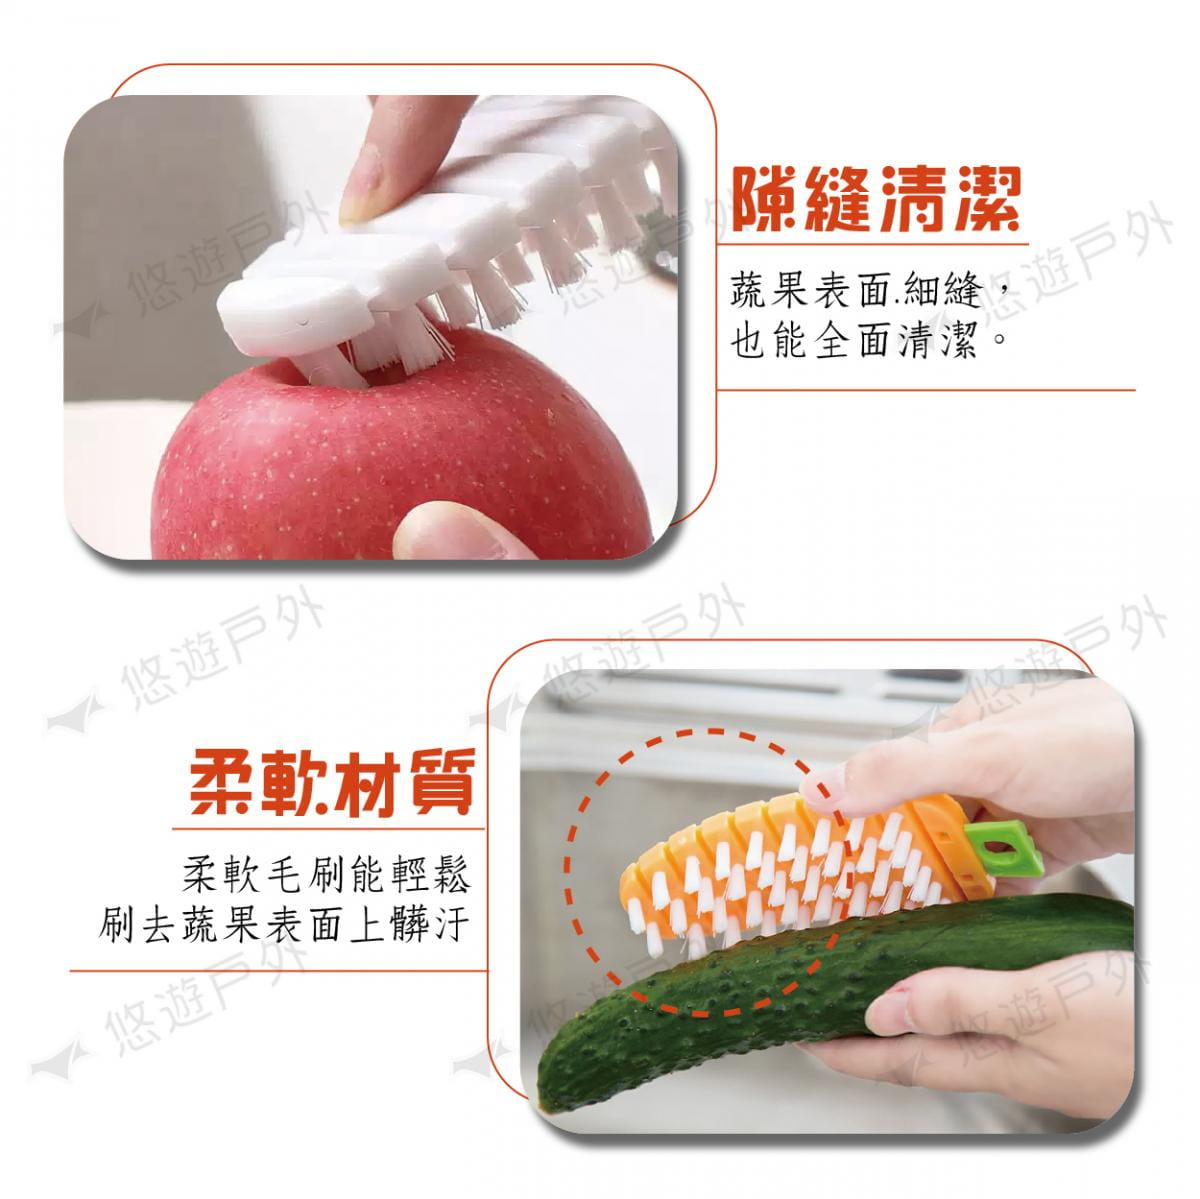 【KOKUBO】小久保蔬果清潔刷 蘿蔔刷 (悠遊戶外) 2